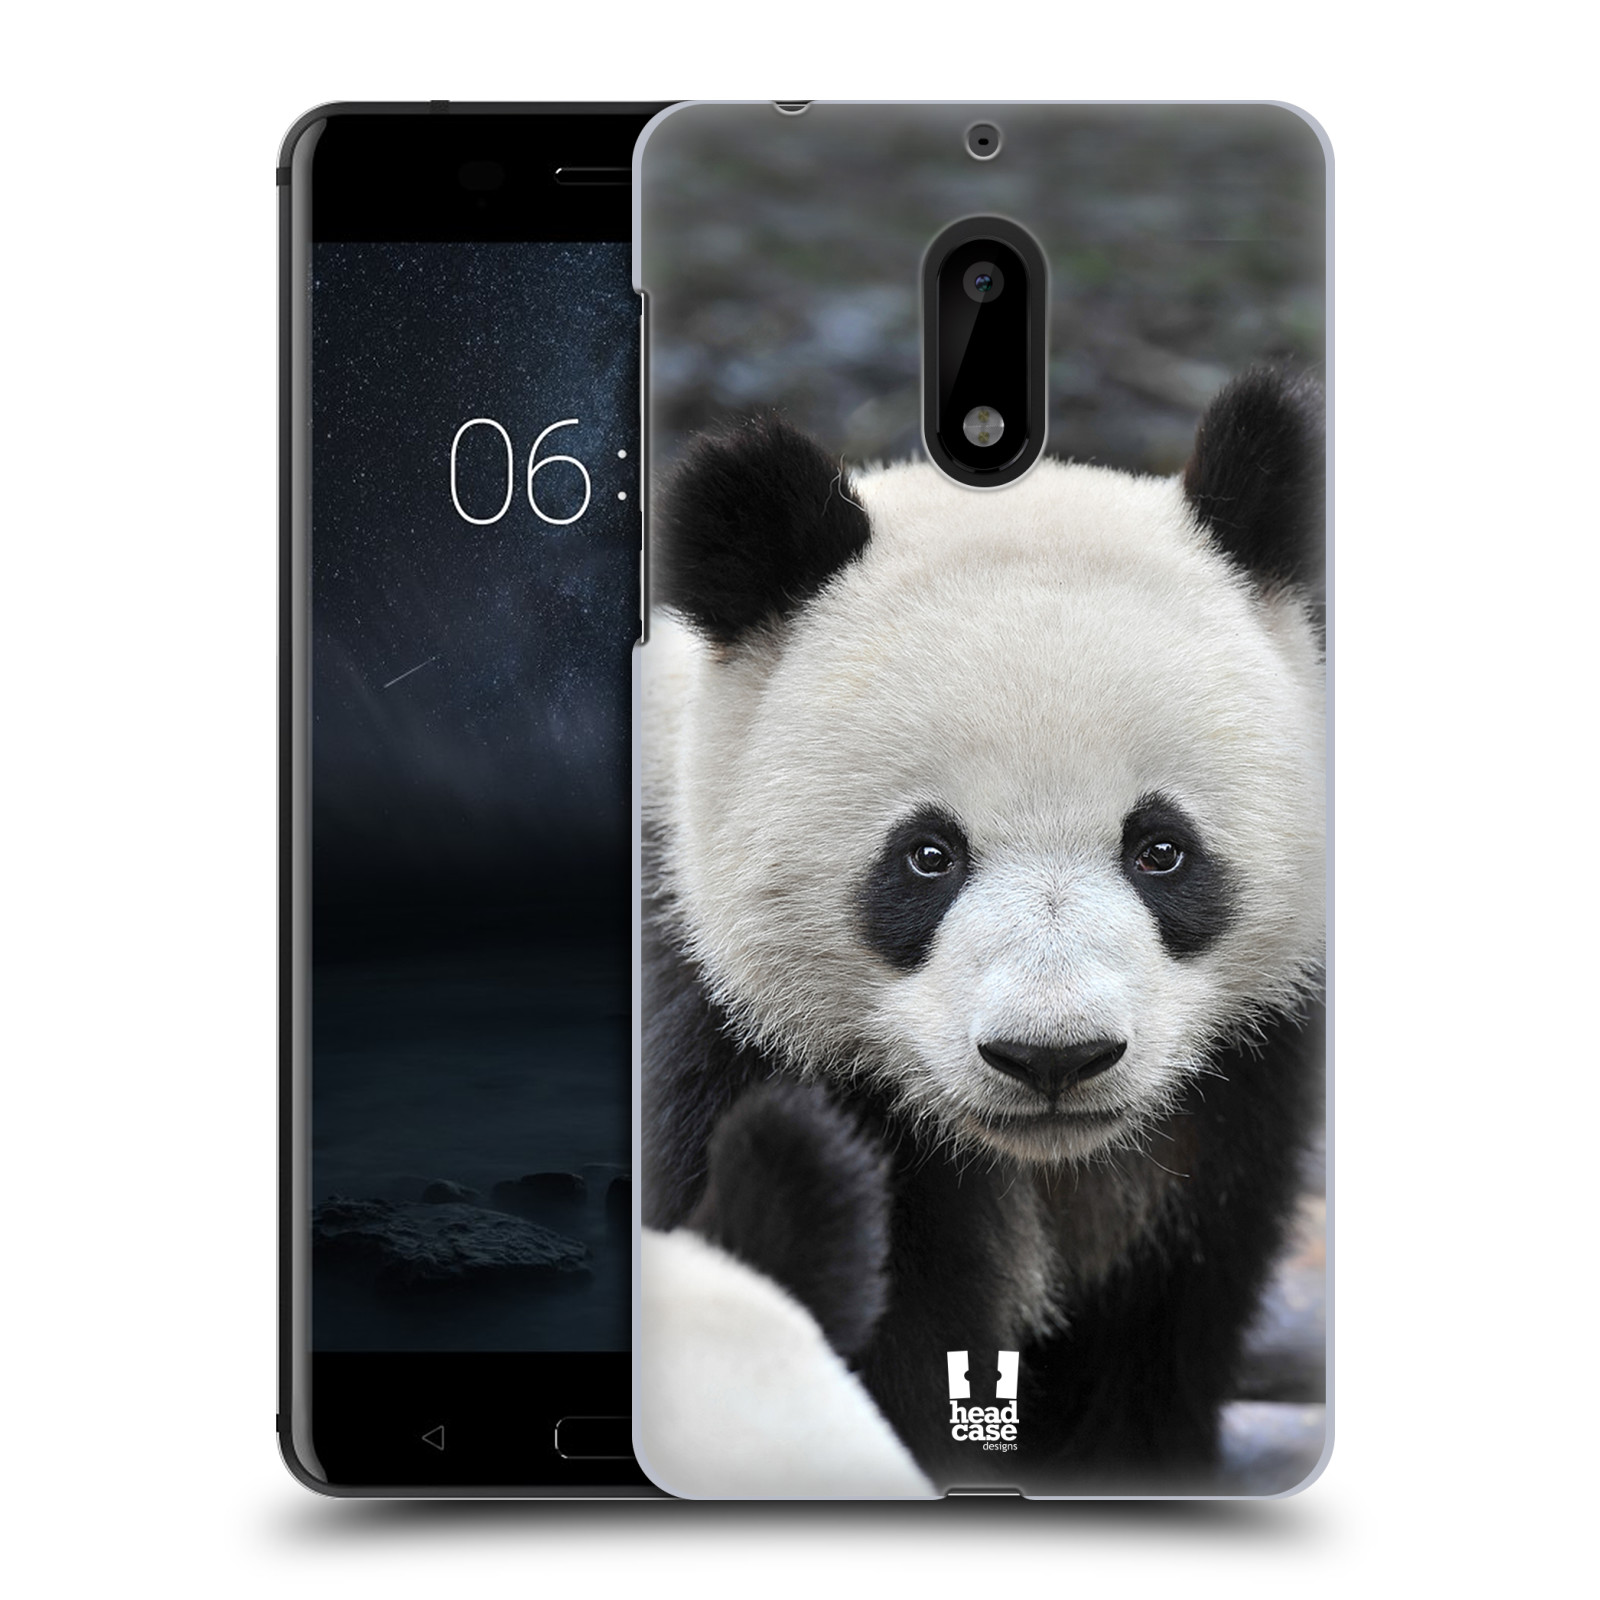 HEAD CASE plastový obal na mobil Nokia 6 vzor Divočina, Divoký život a zvířata foto MEDVĚD PANDA